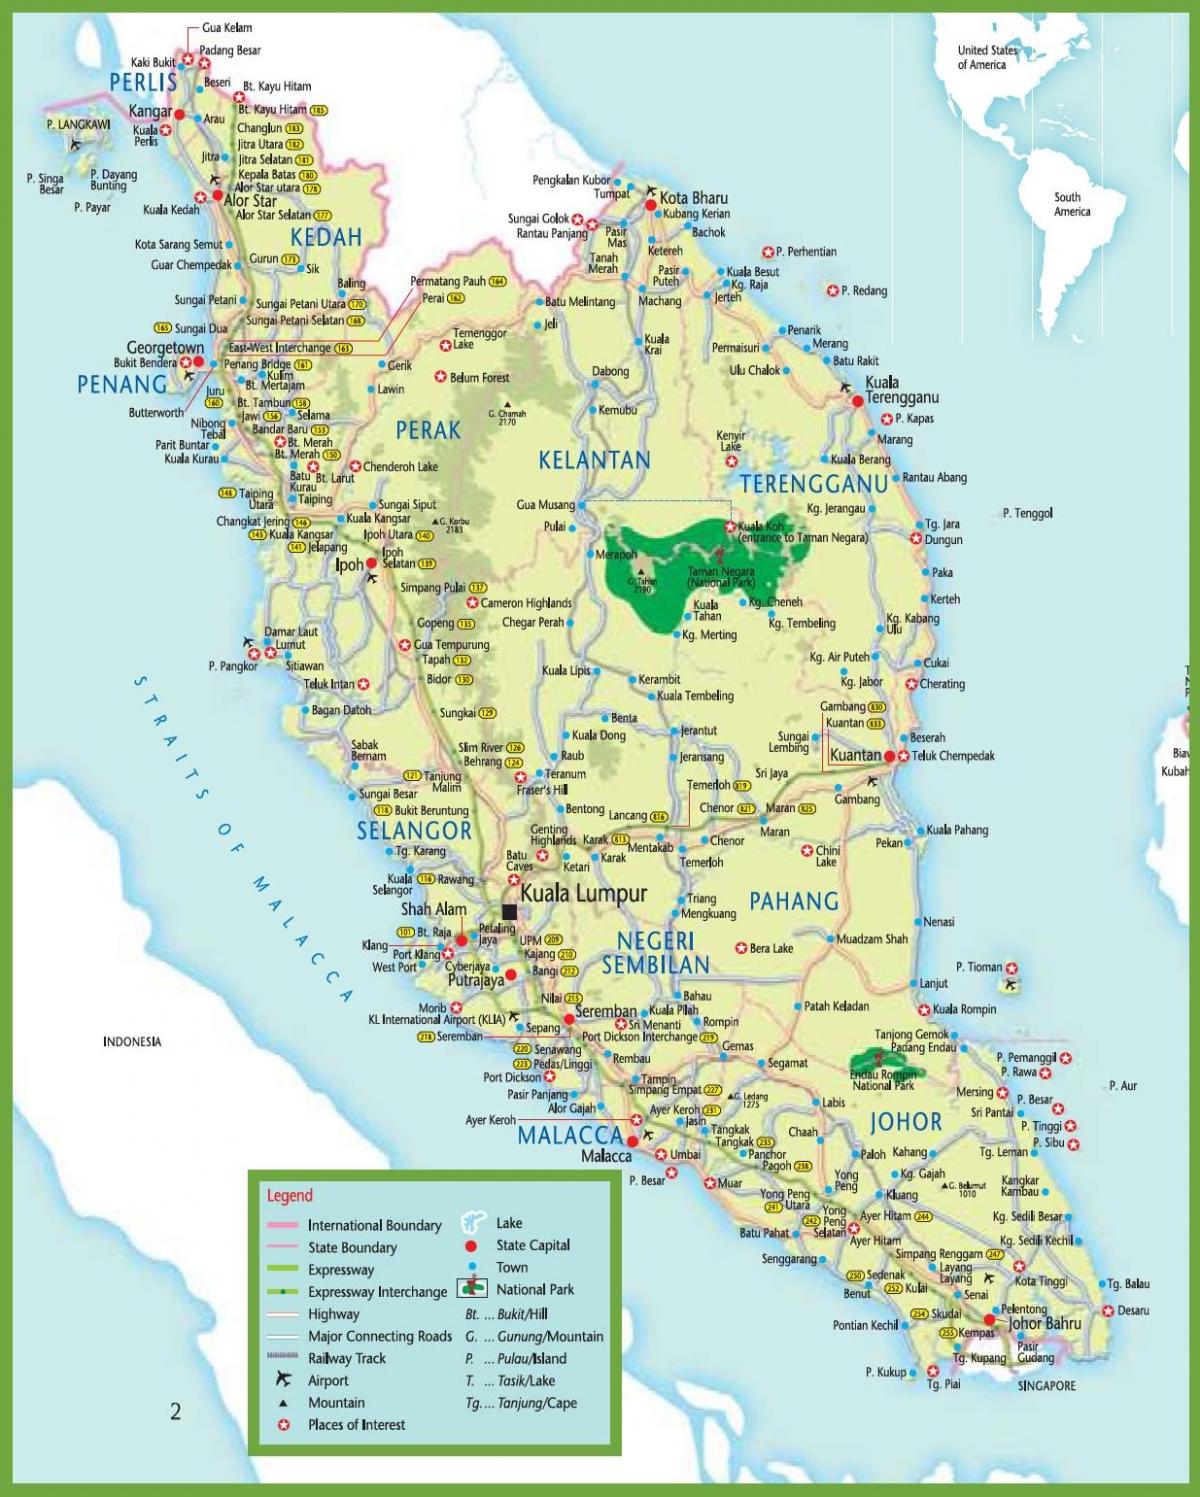 mrt kartu u maleziji